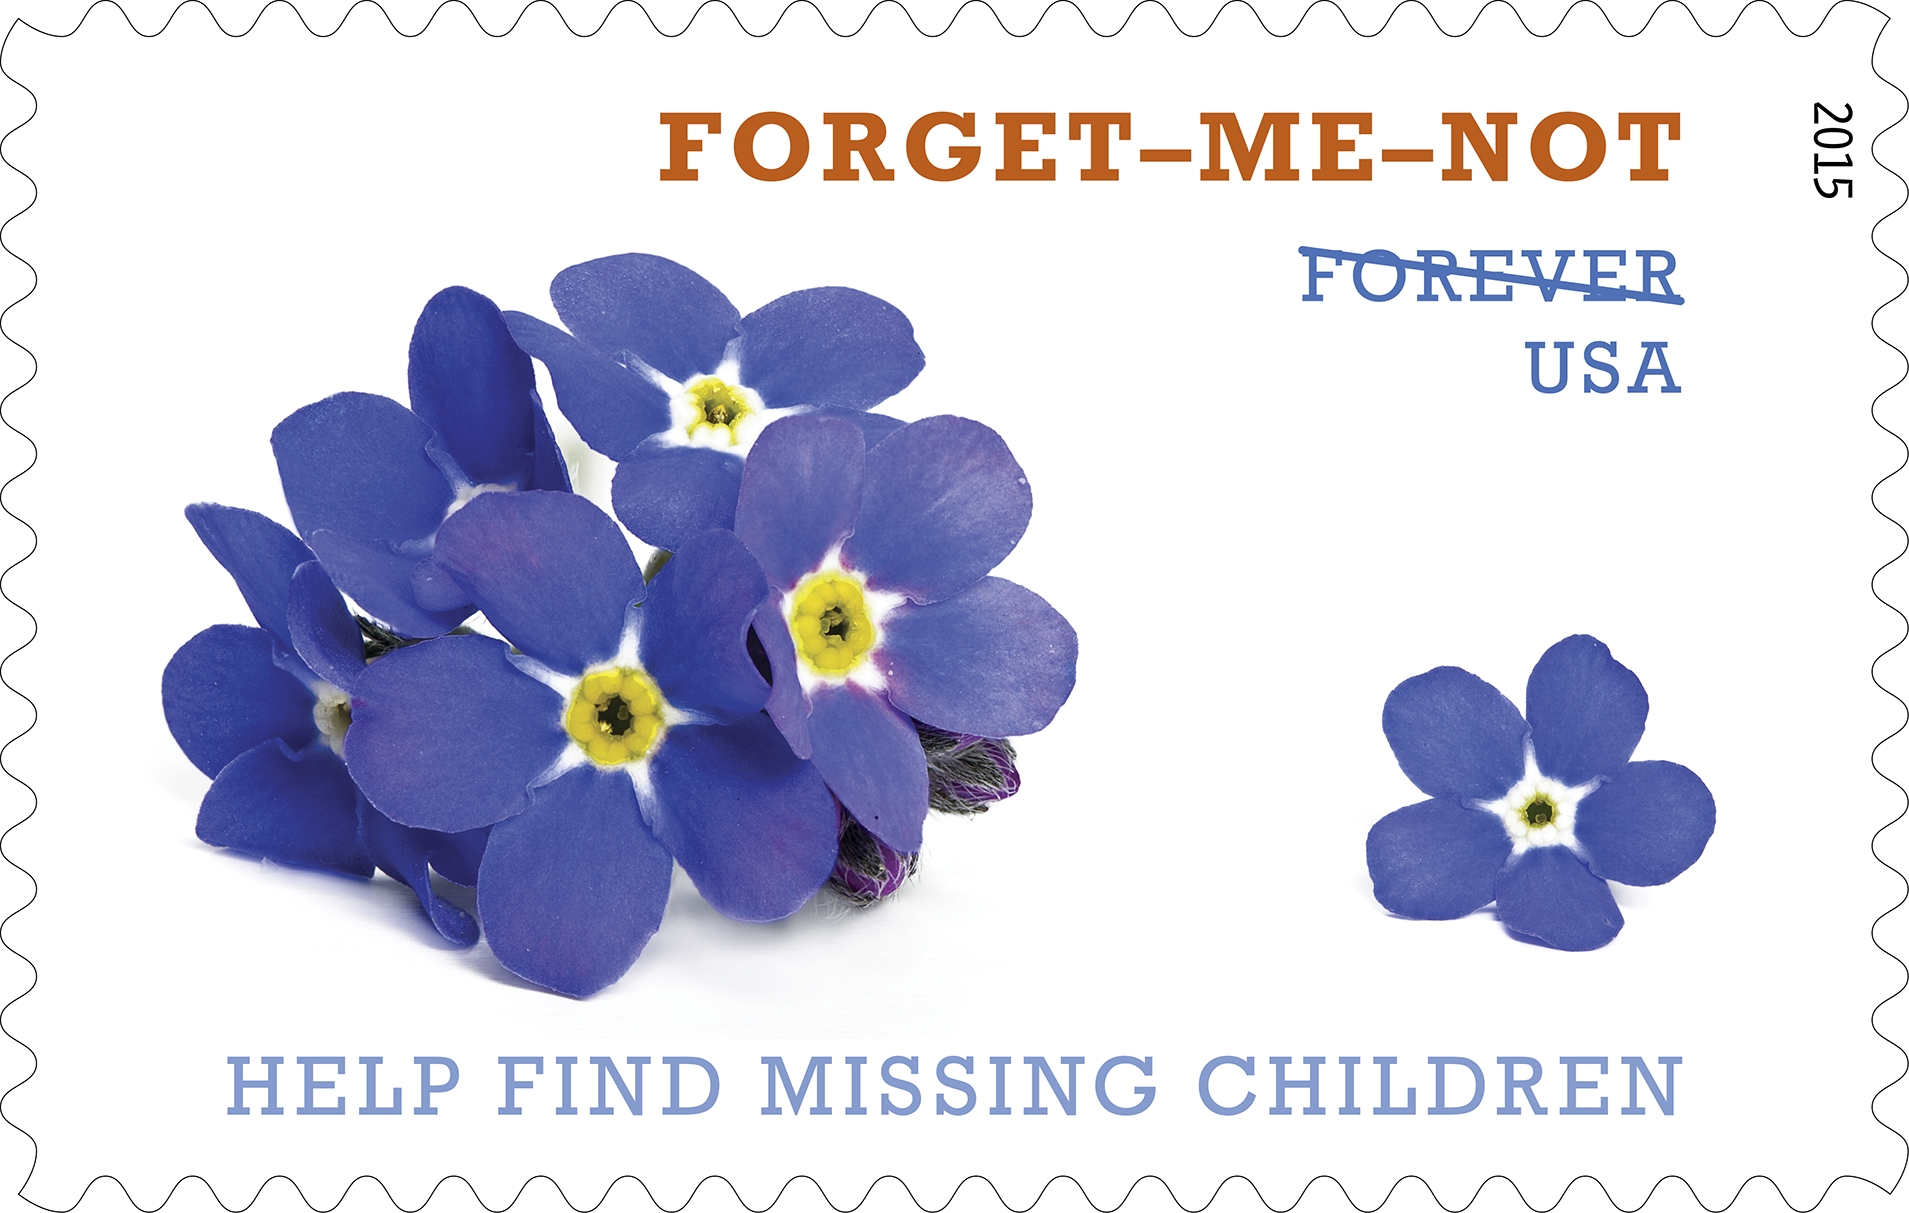 Missing Children stamp